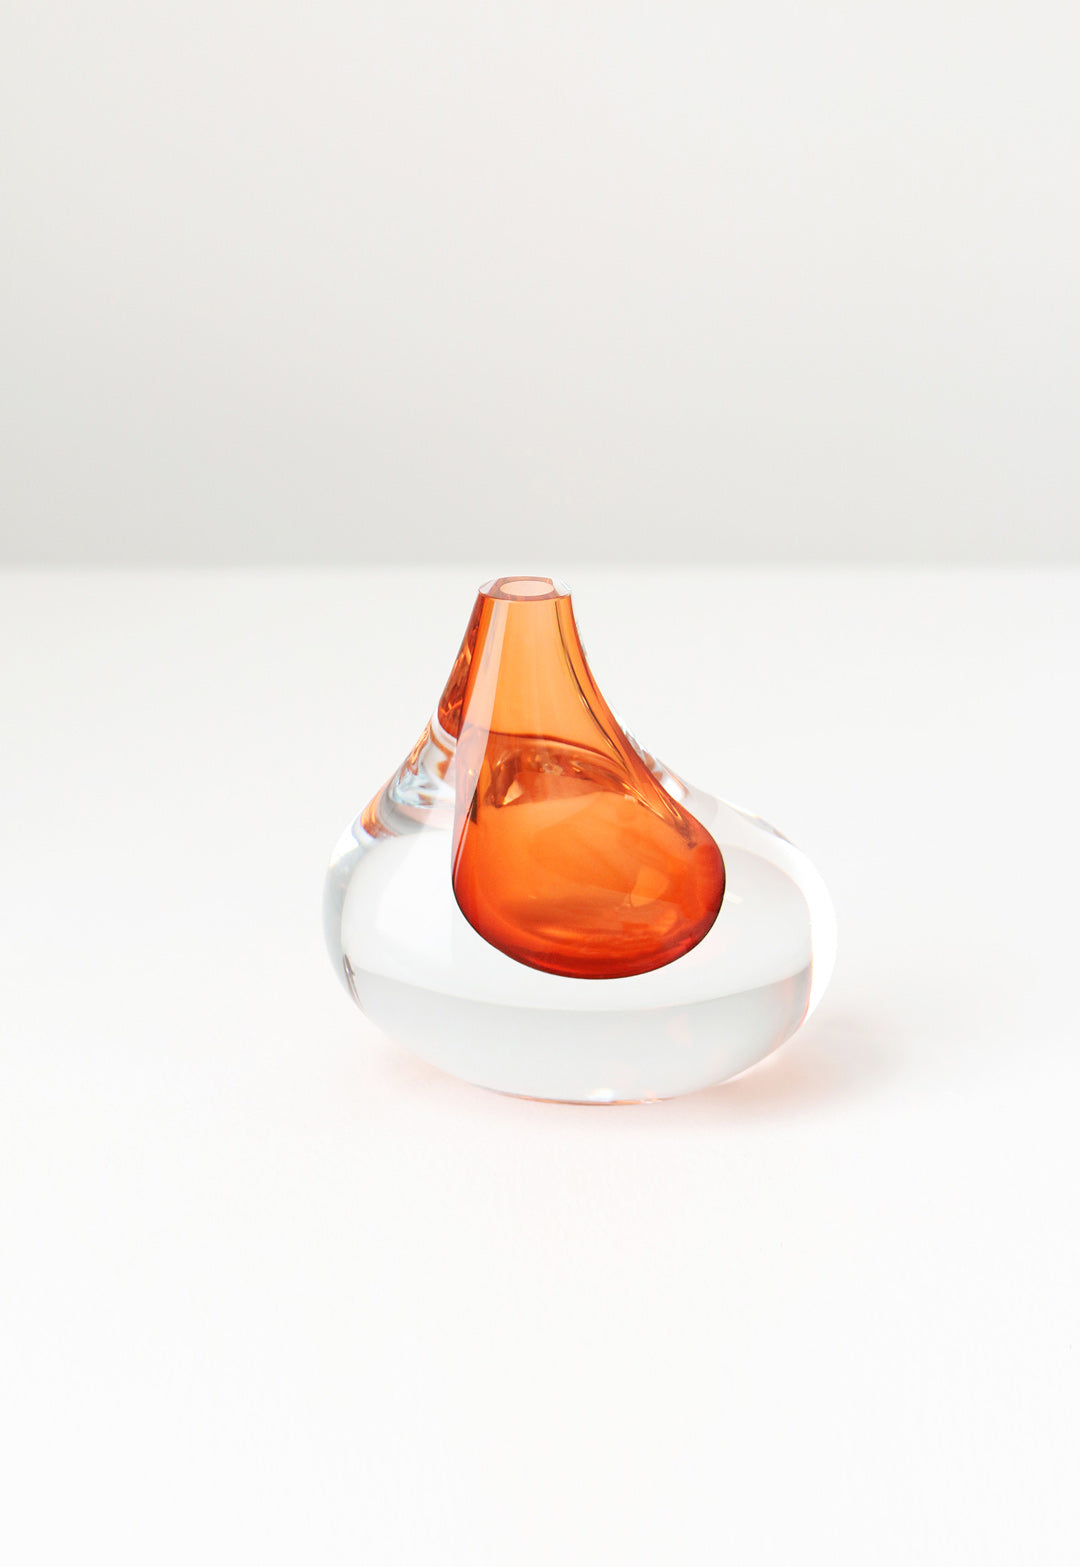 SkLO Droplet Asymmetrical Handblown Glass Vessels